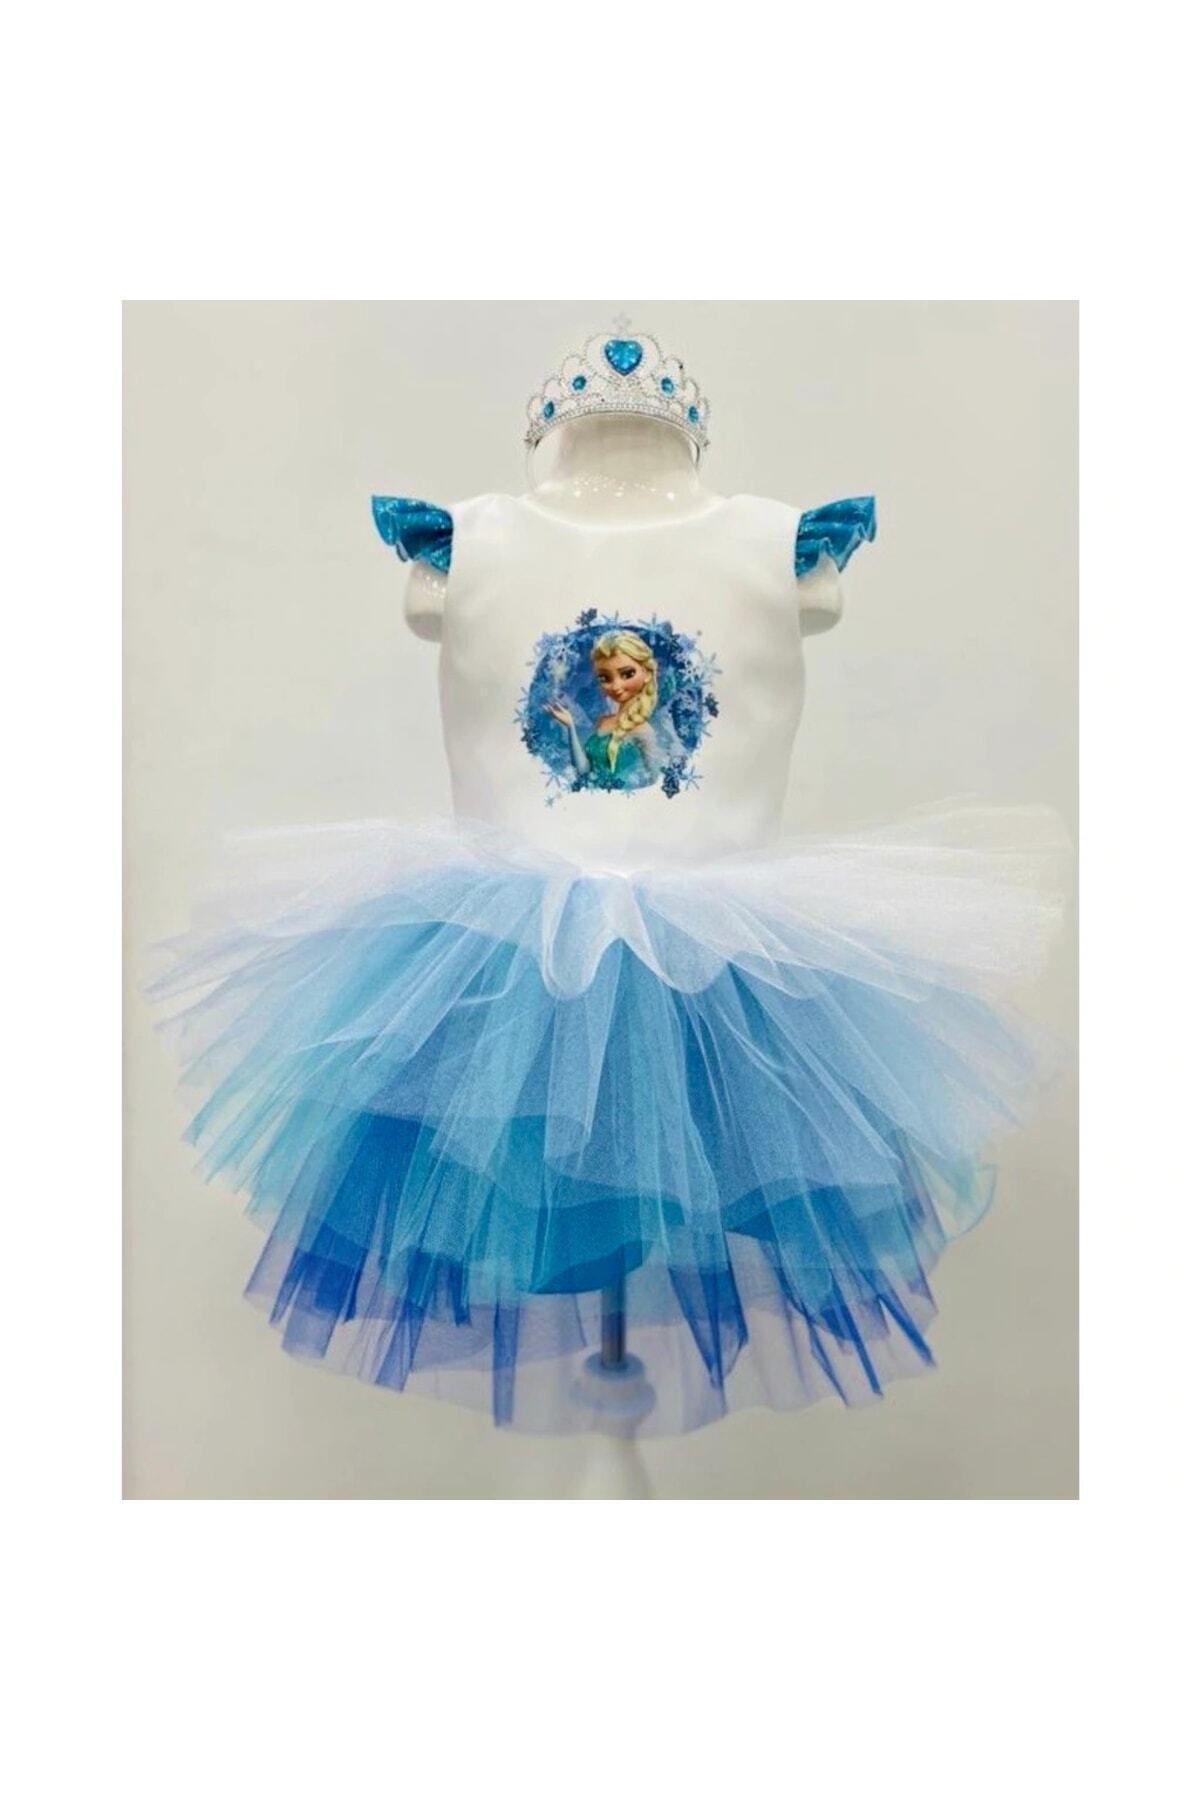 YAĞMUR KOStütüM Elsa Karlar Ülkesi Model Kız Çocuk Doğumgünü Parti Elbisesi Kostümü